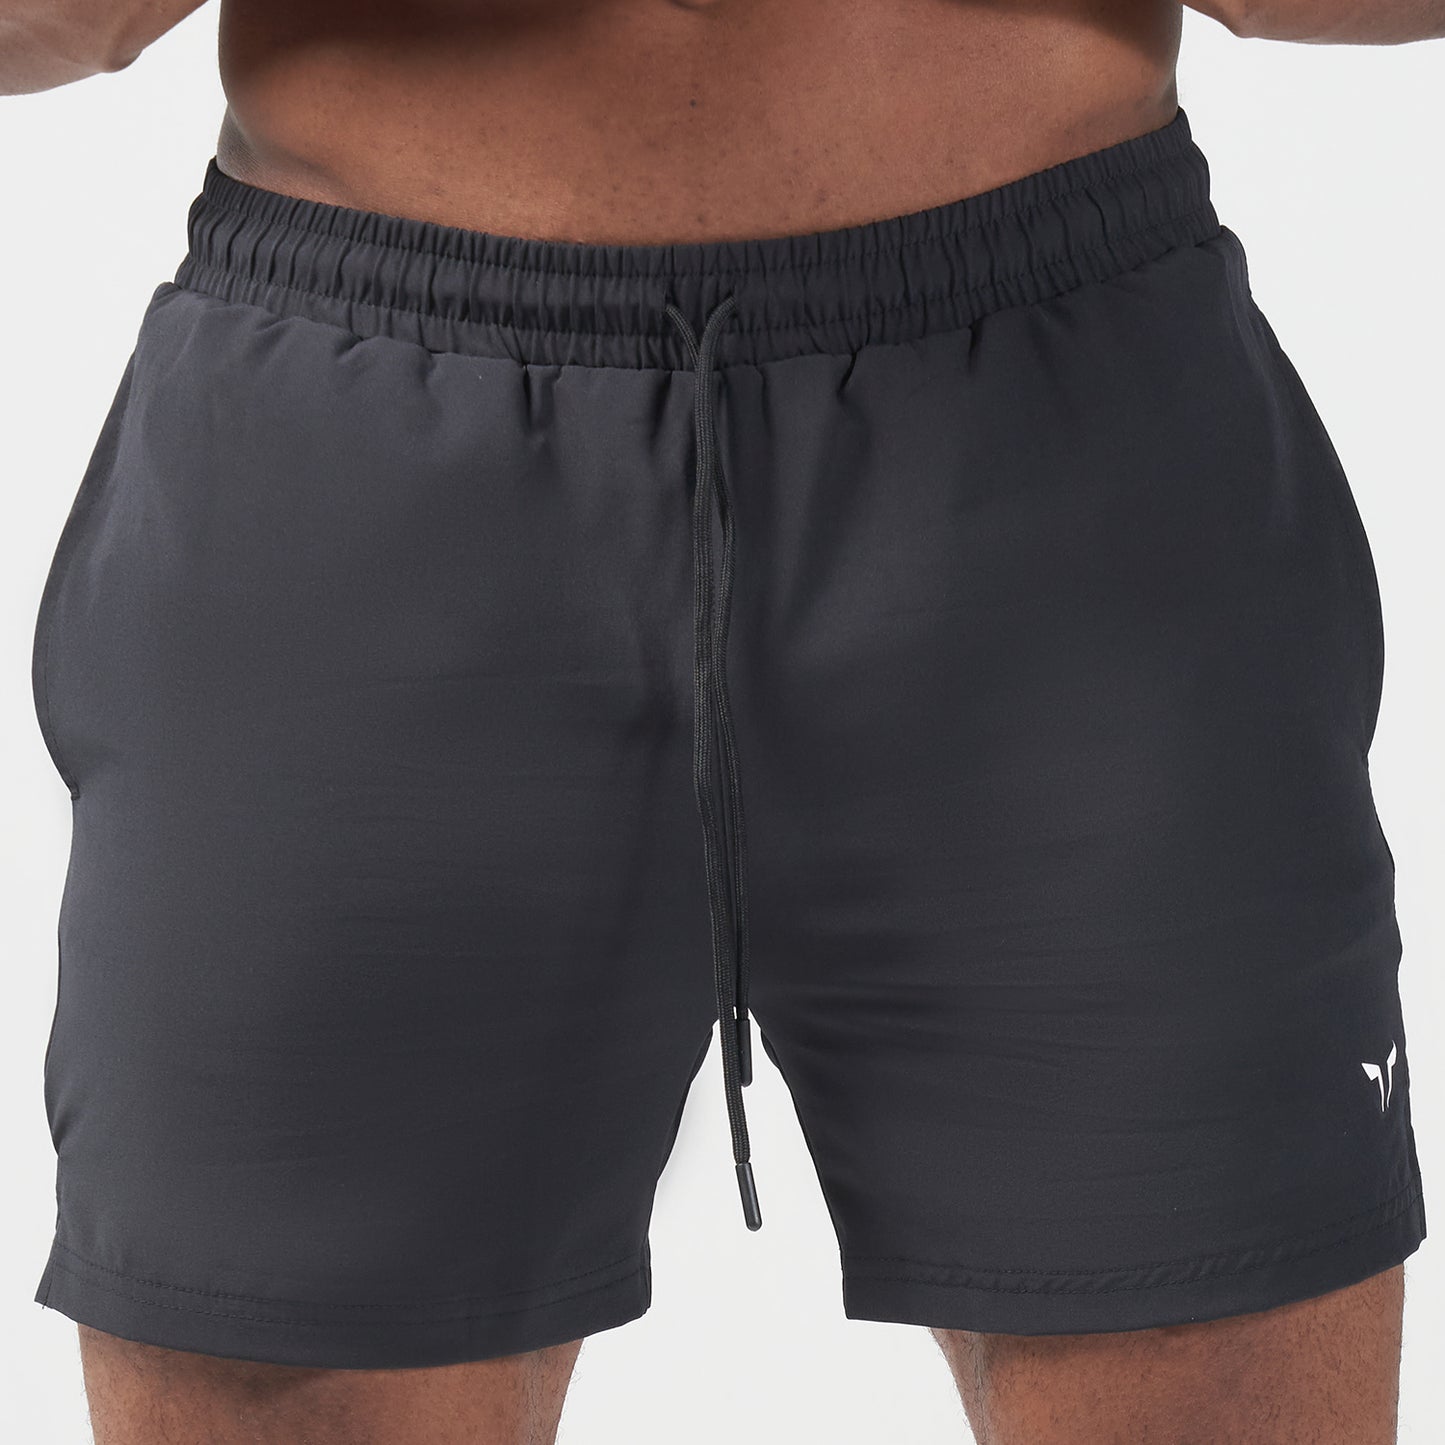 Essential 5 Inch Shorts - Black